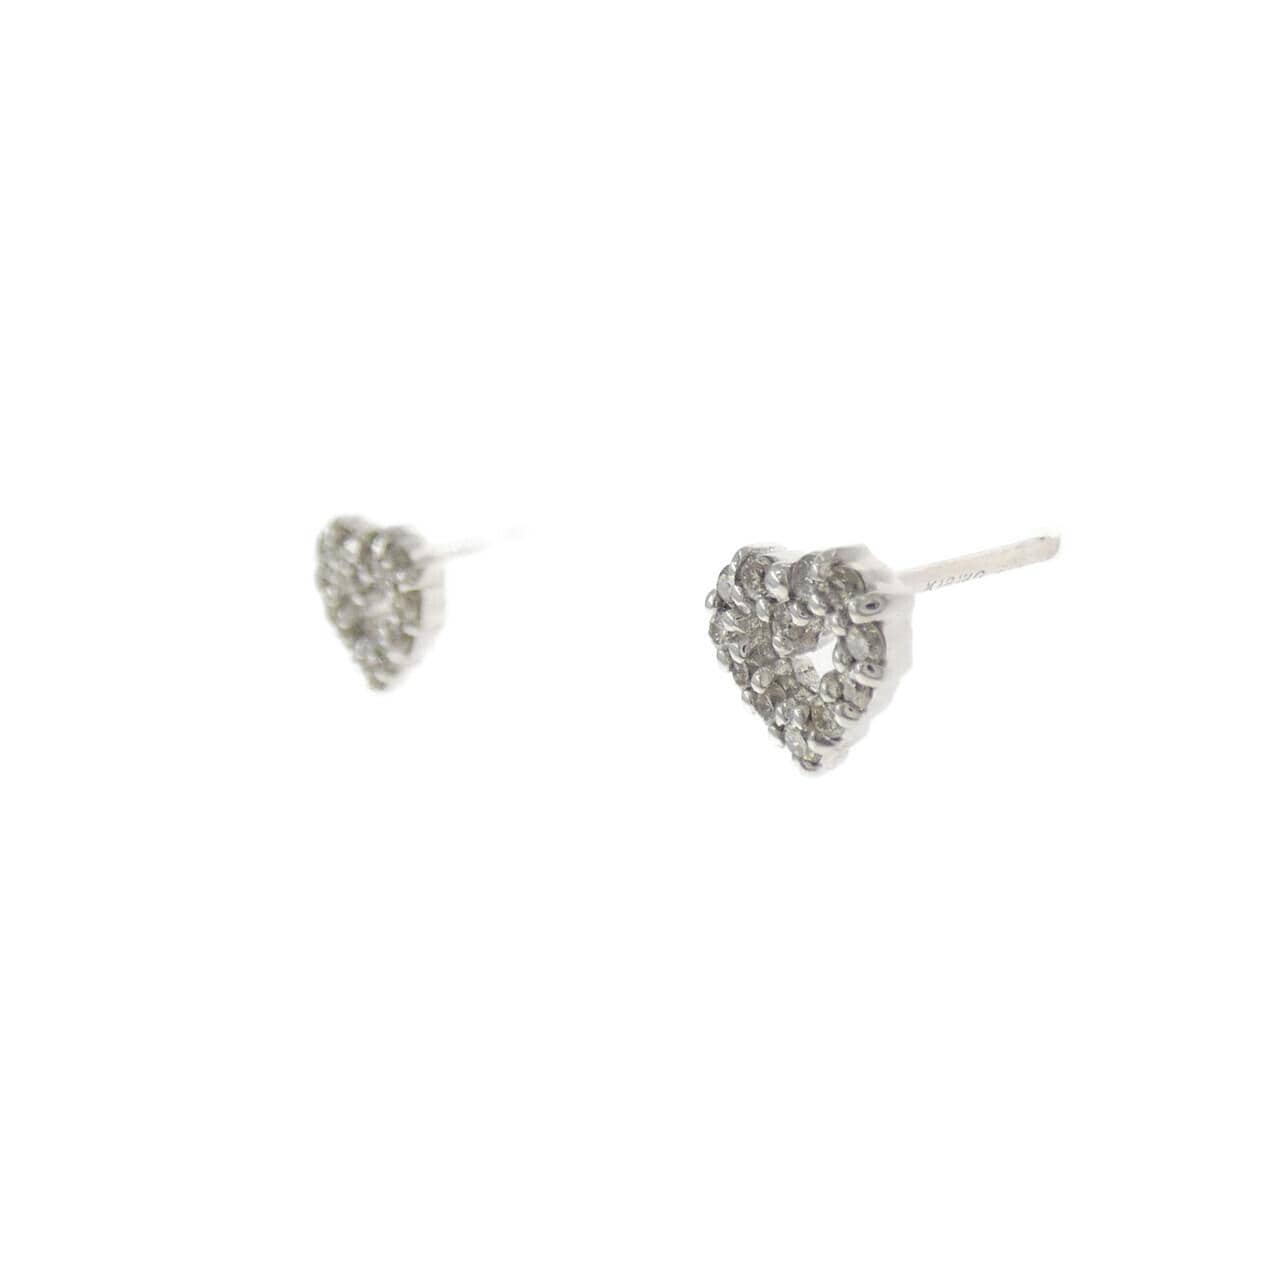 K18WG Heart Diamond Earrings 0.16CT